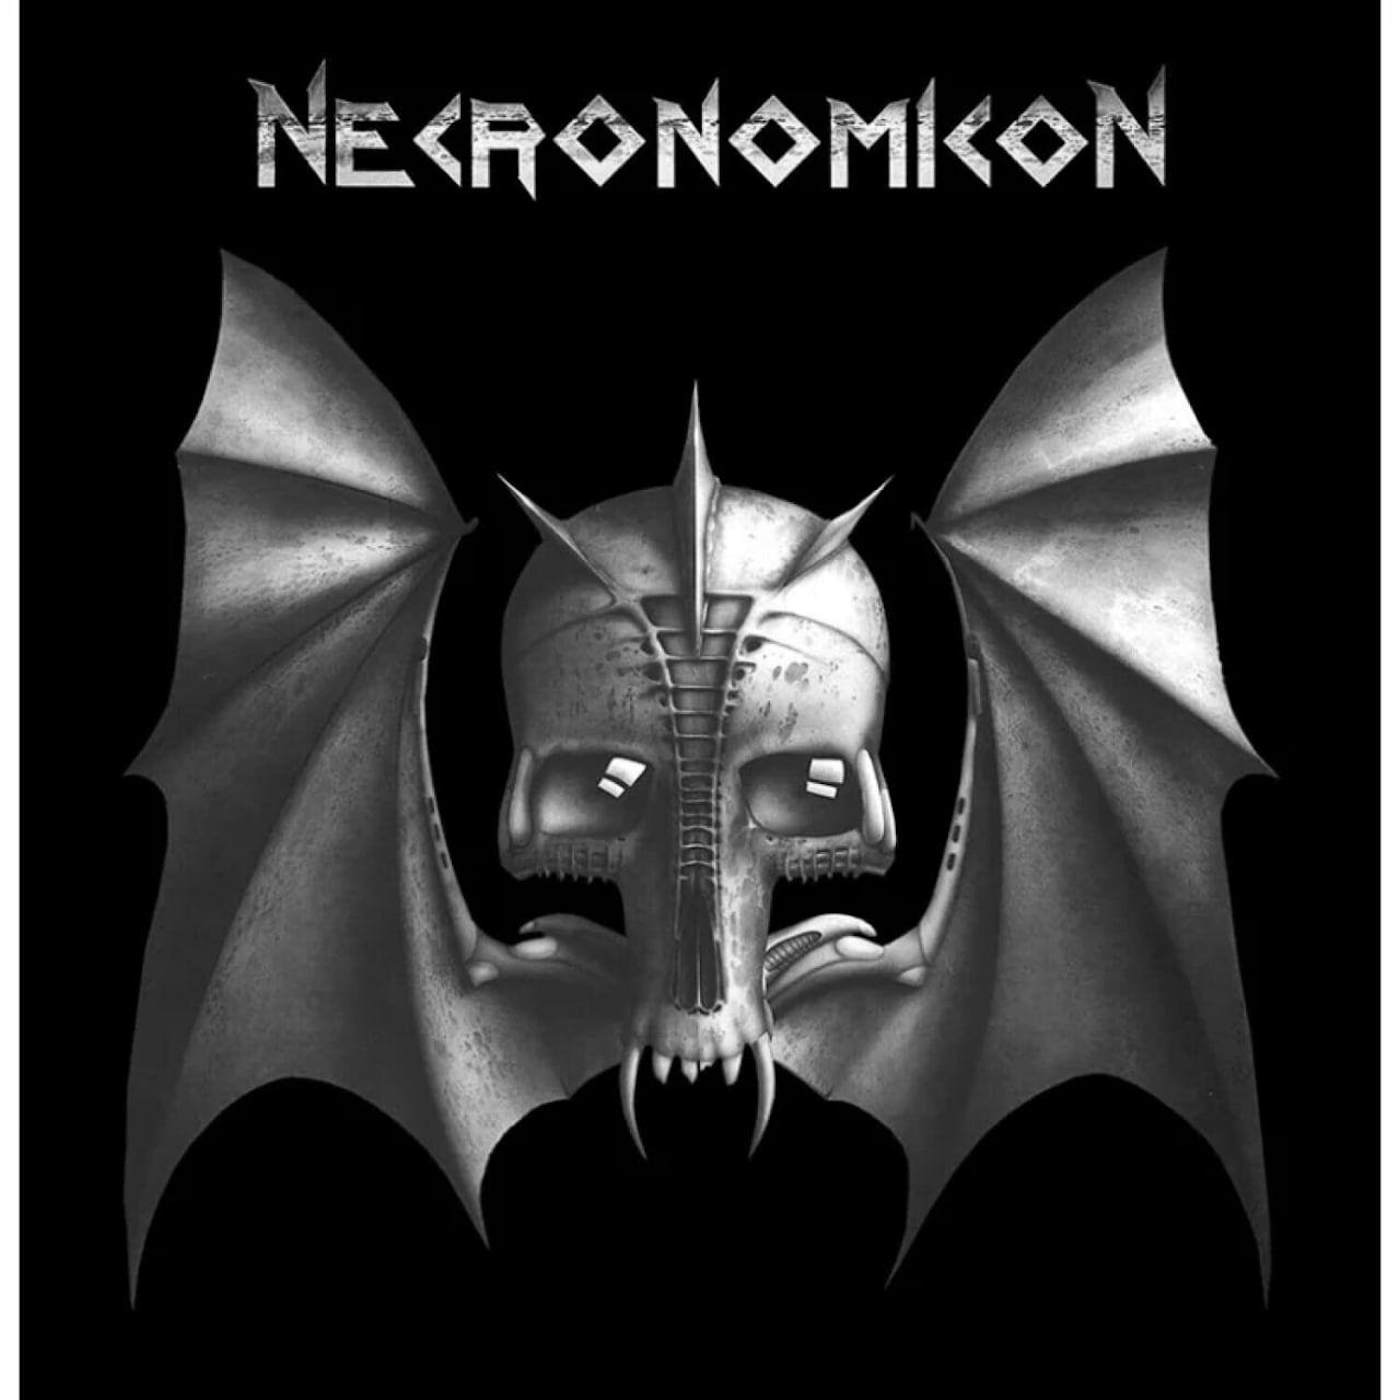  Necronomicon (Splatter) Vinyl Record